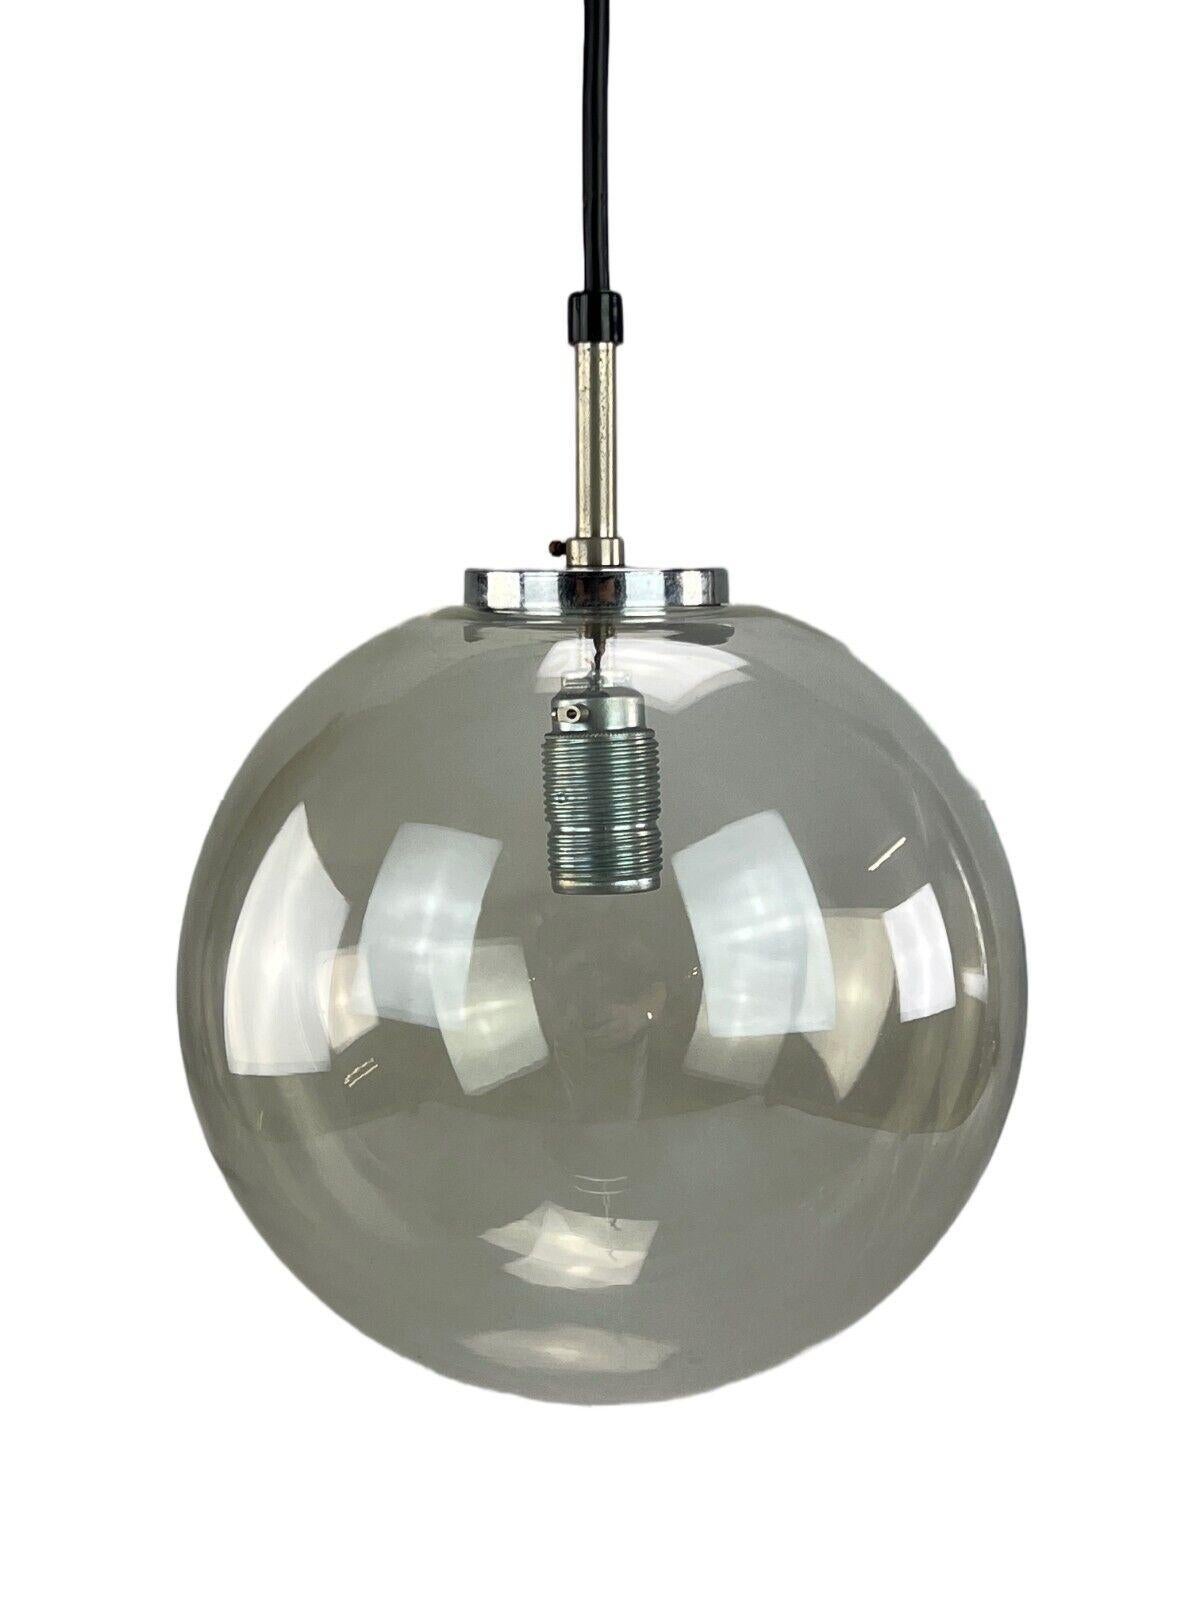 1960s-1970s lamp ceiling lamp Limburg 